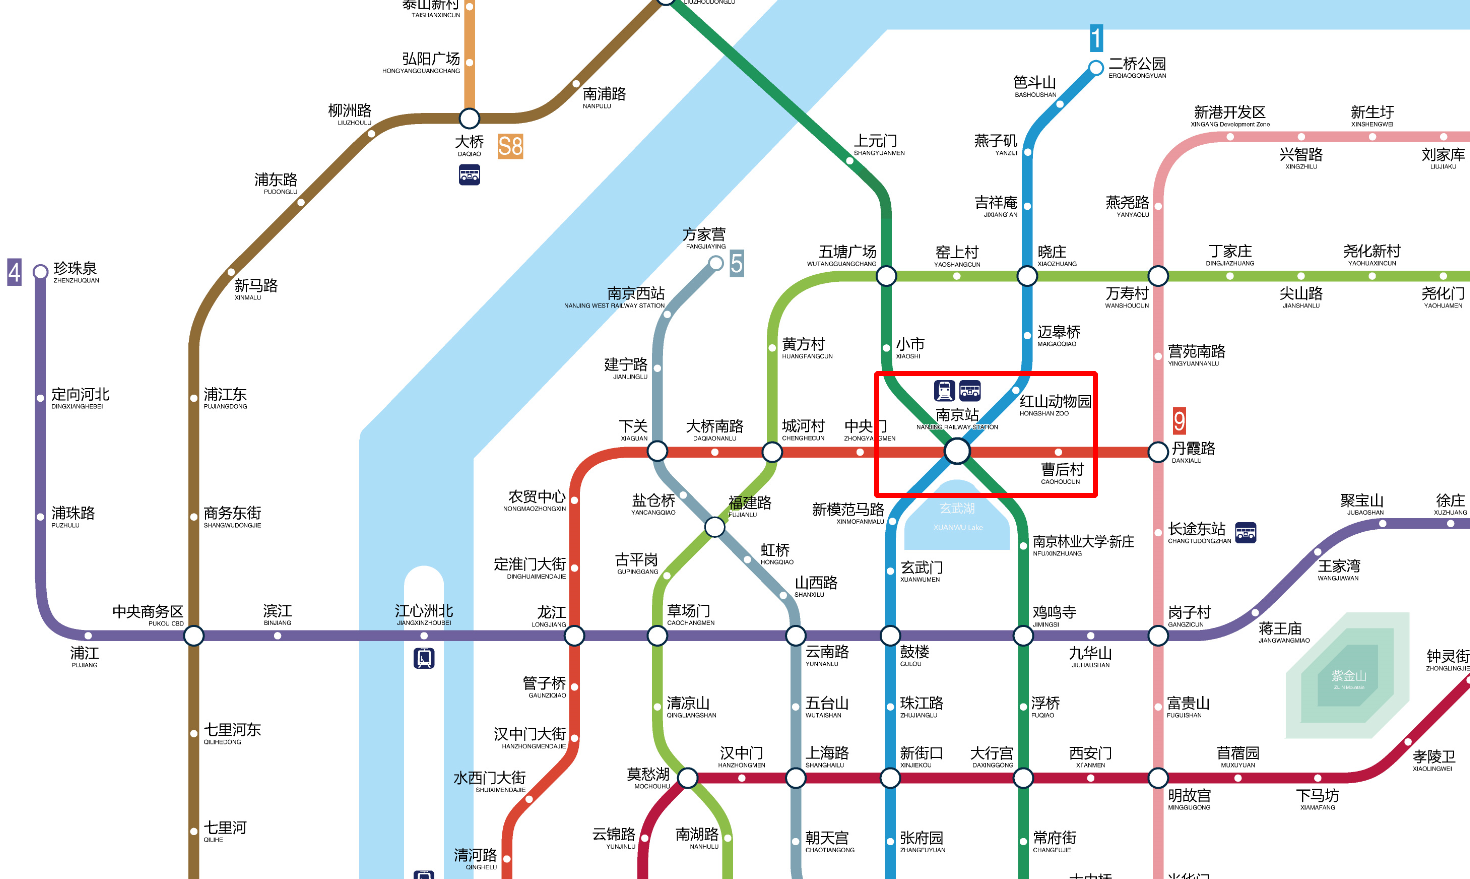 下载南京地铁线路图图片